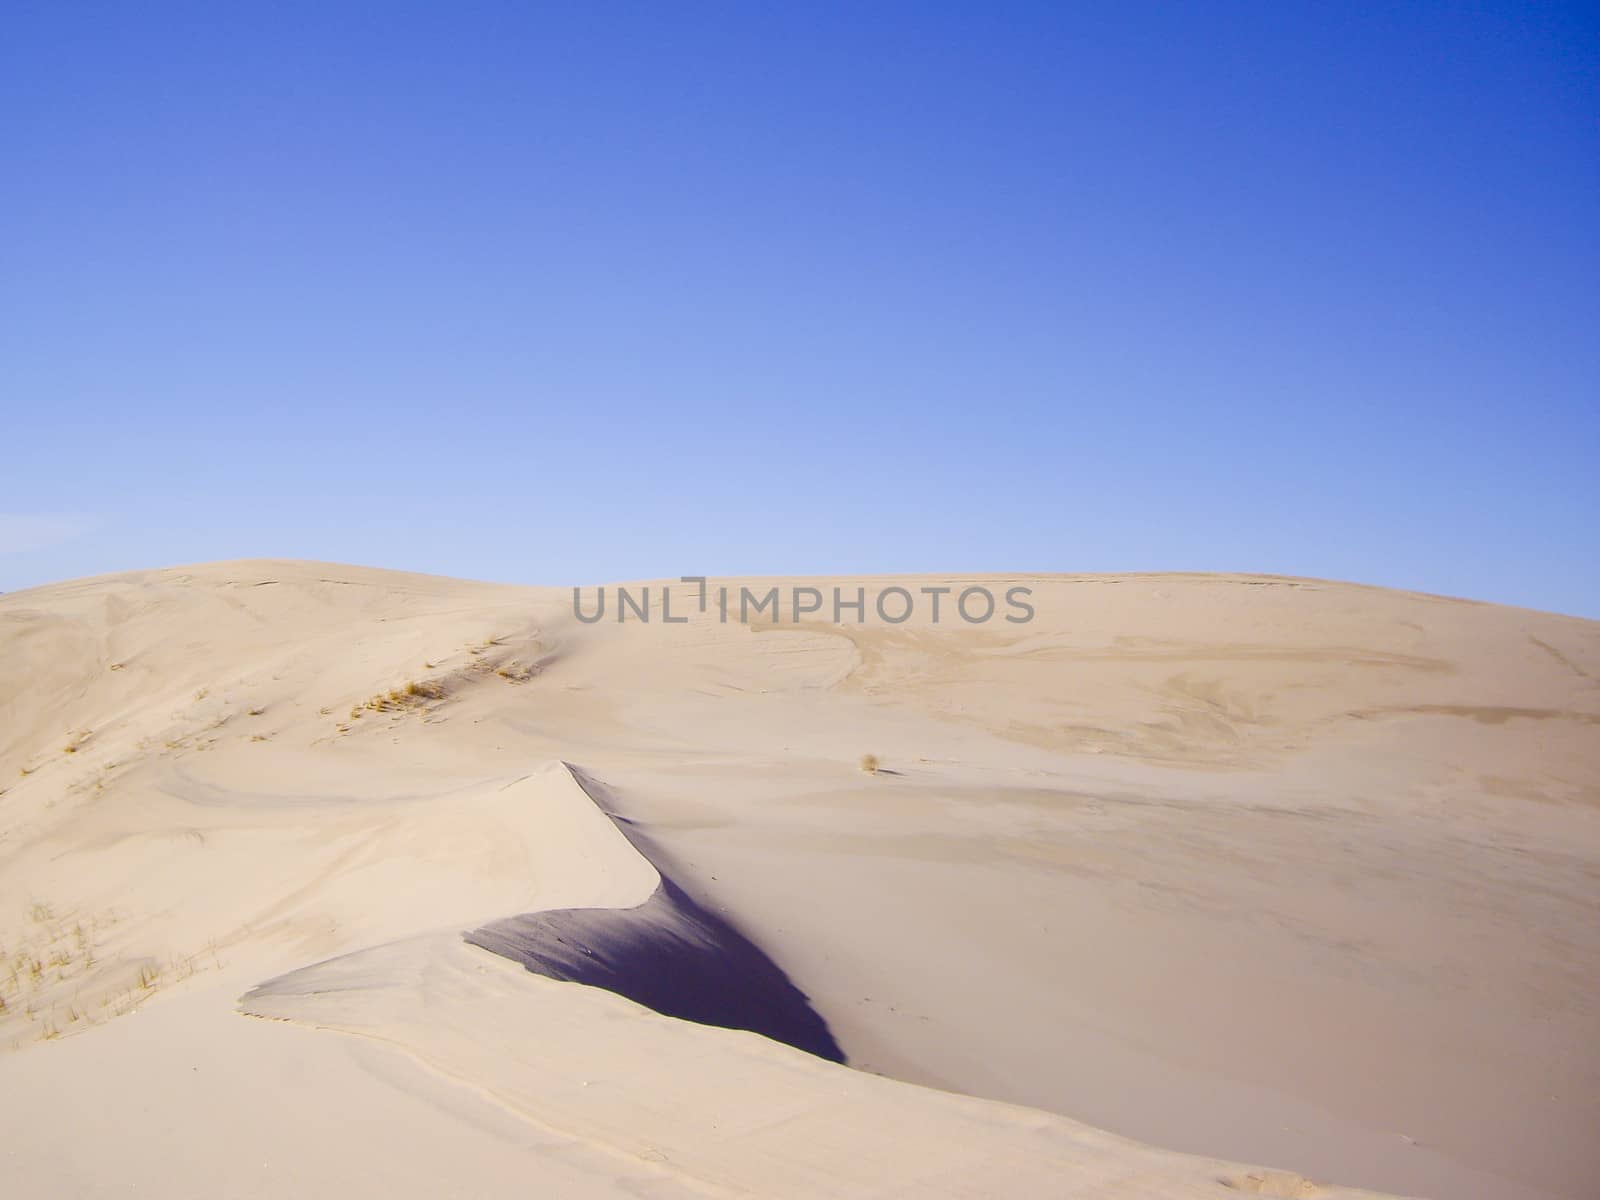 Desert Sand Ridge by emattil